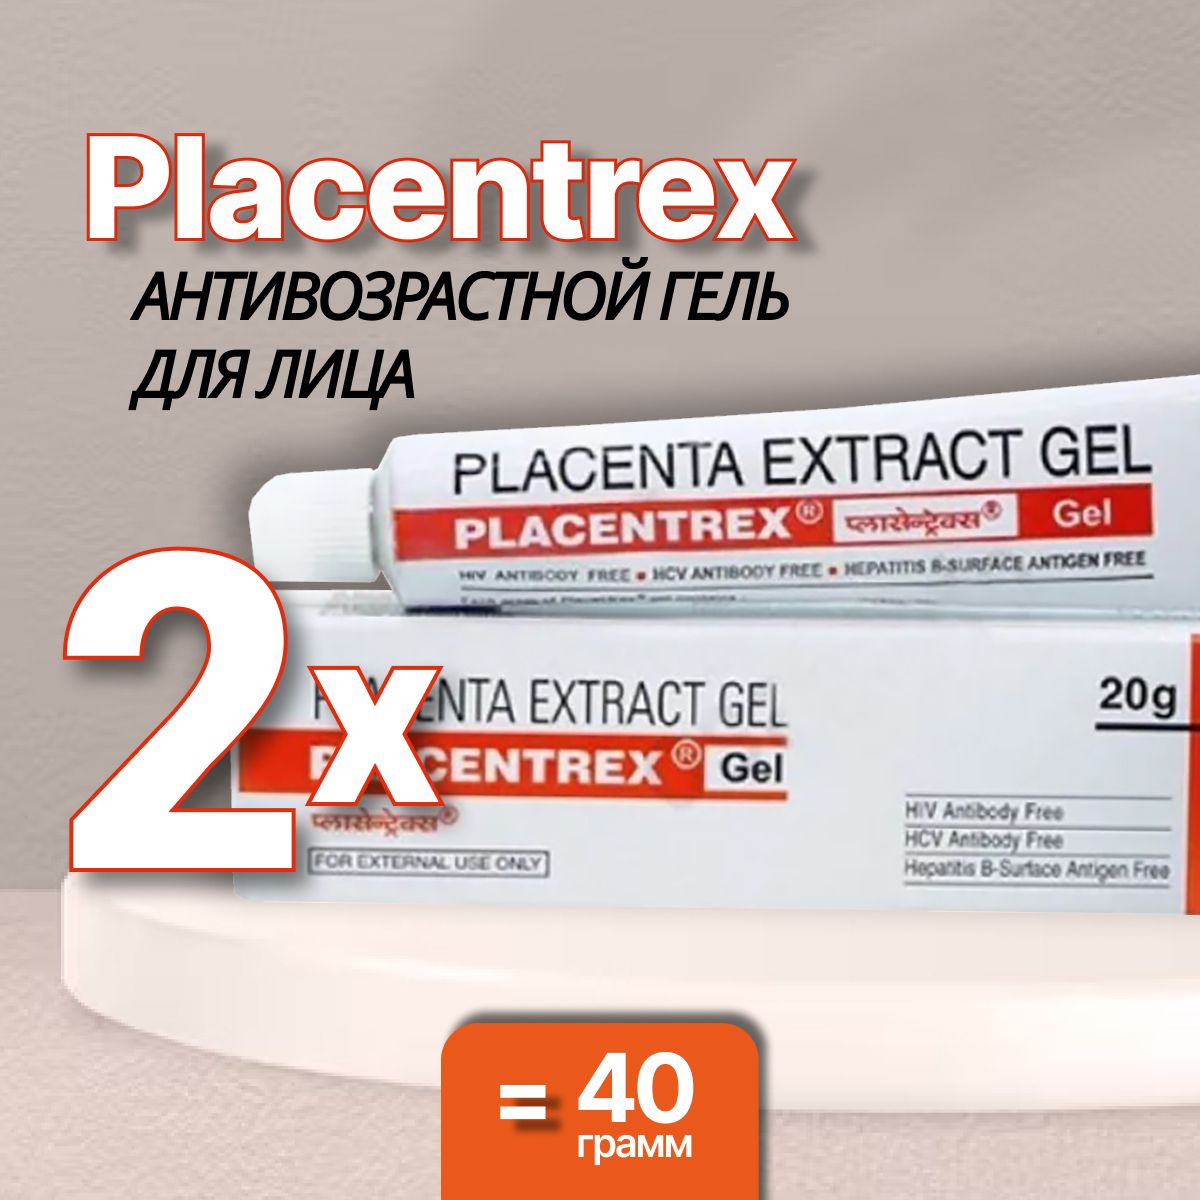 Плацентрекс placentrex gel. Albert David Placentrex placenta extract Gel гель Плацентрекс для лица. Плацентрекс с плацентой Placentrex extract Gel. Placentrex Cream. Плацентрекс крем инструкция.